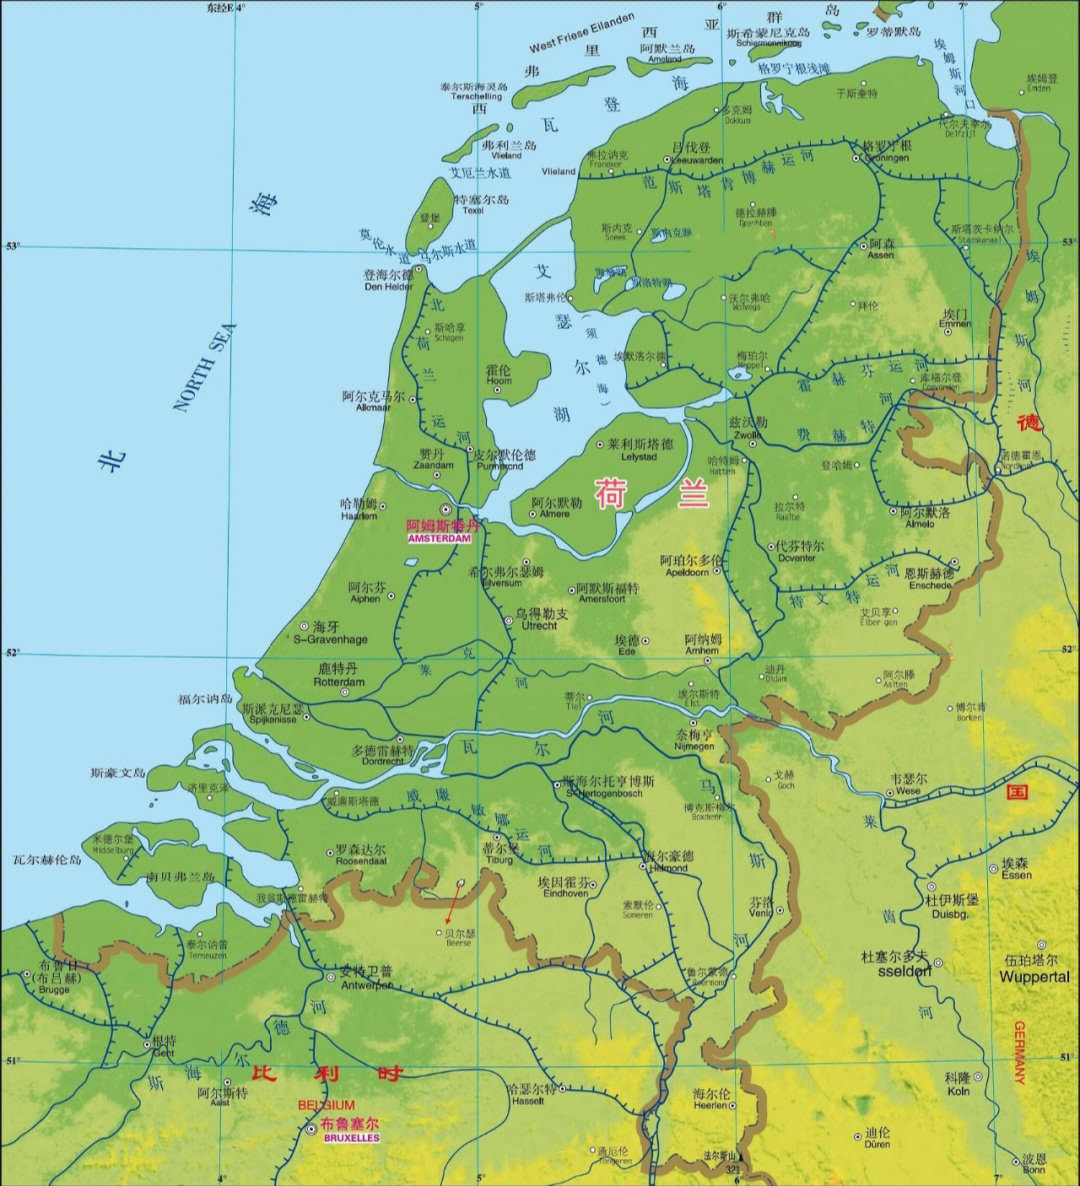 荷兰埃因霍温地图图片